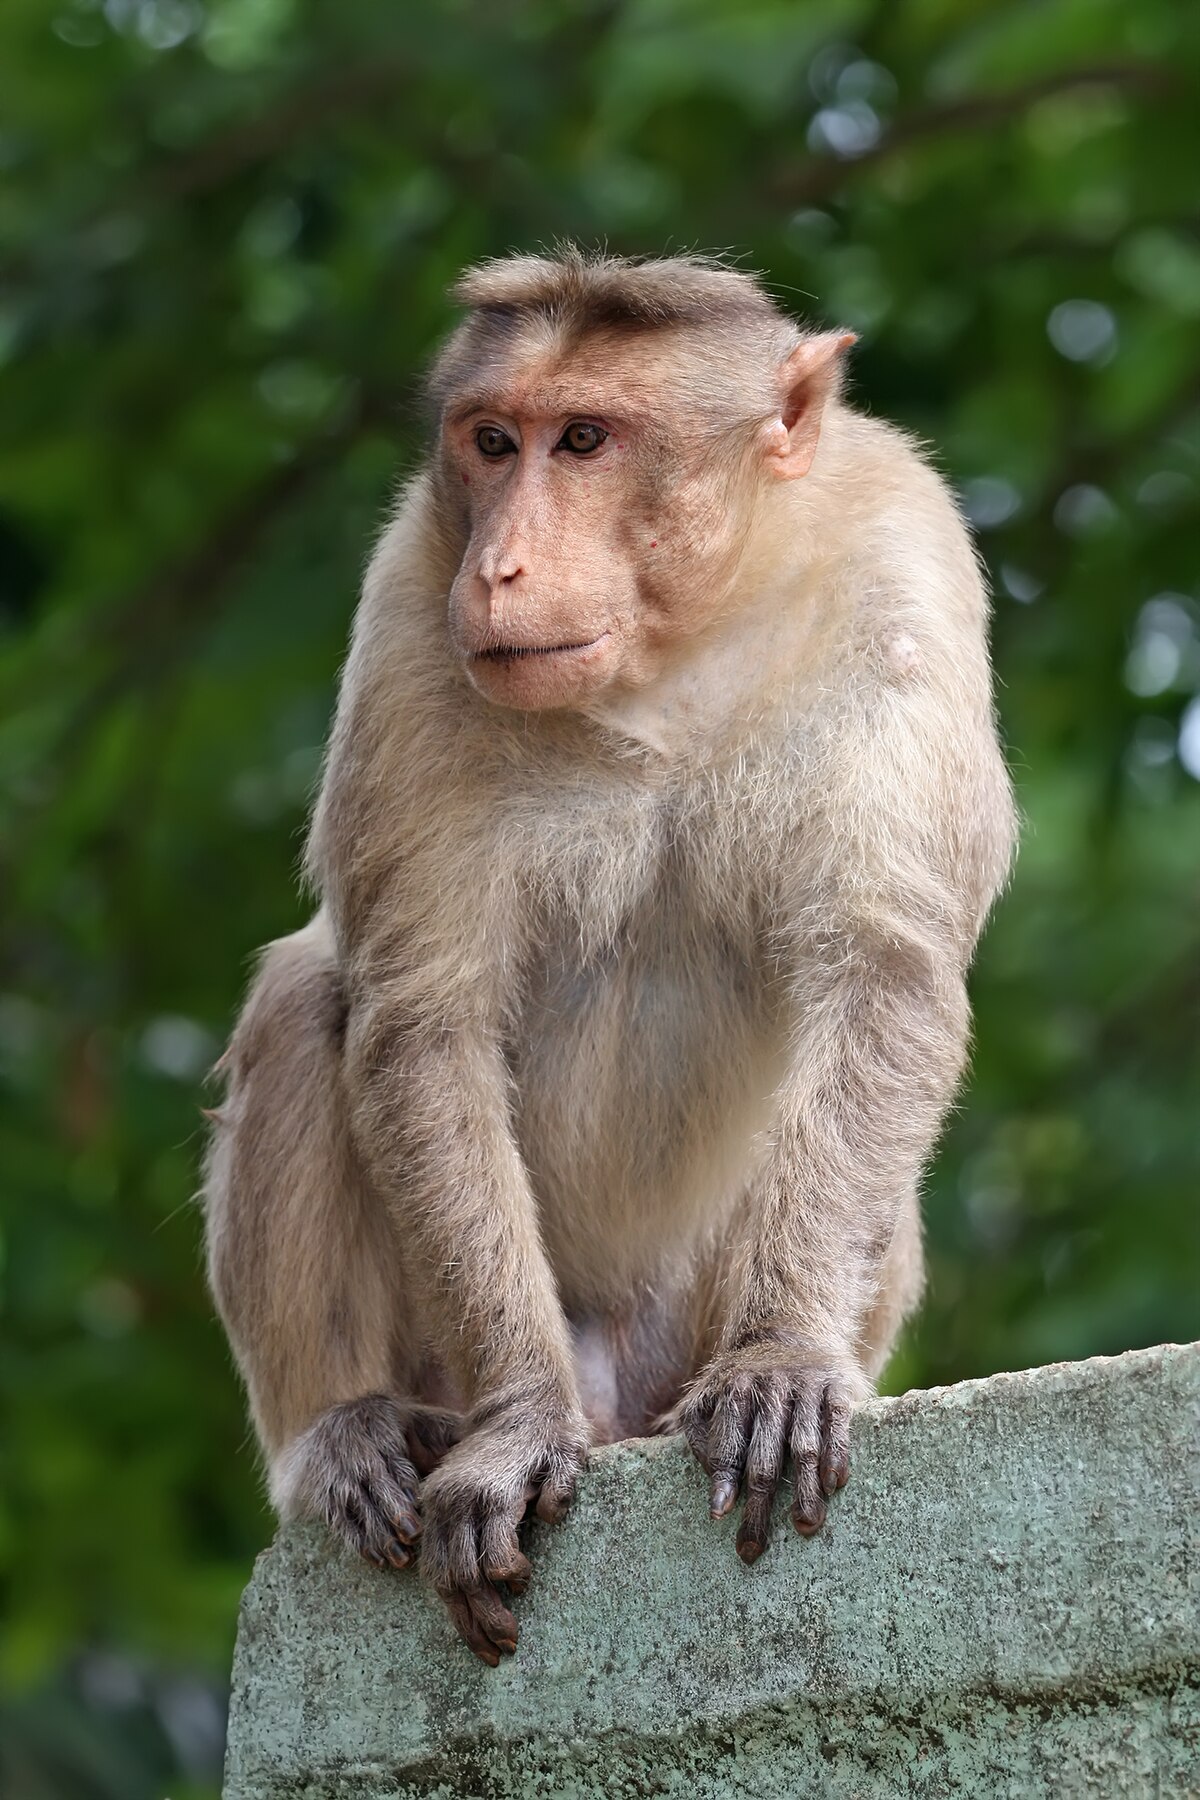 Bức ảnh về hình tượng của con khỉ chắc chắn sẽ khiến bạn thích thú và muốn xem nhiều hơn. Hãy để bức ảnh đắm say trái tim bạn bằng sự dễ thương và dịu dàng của chúng.